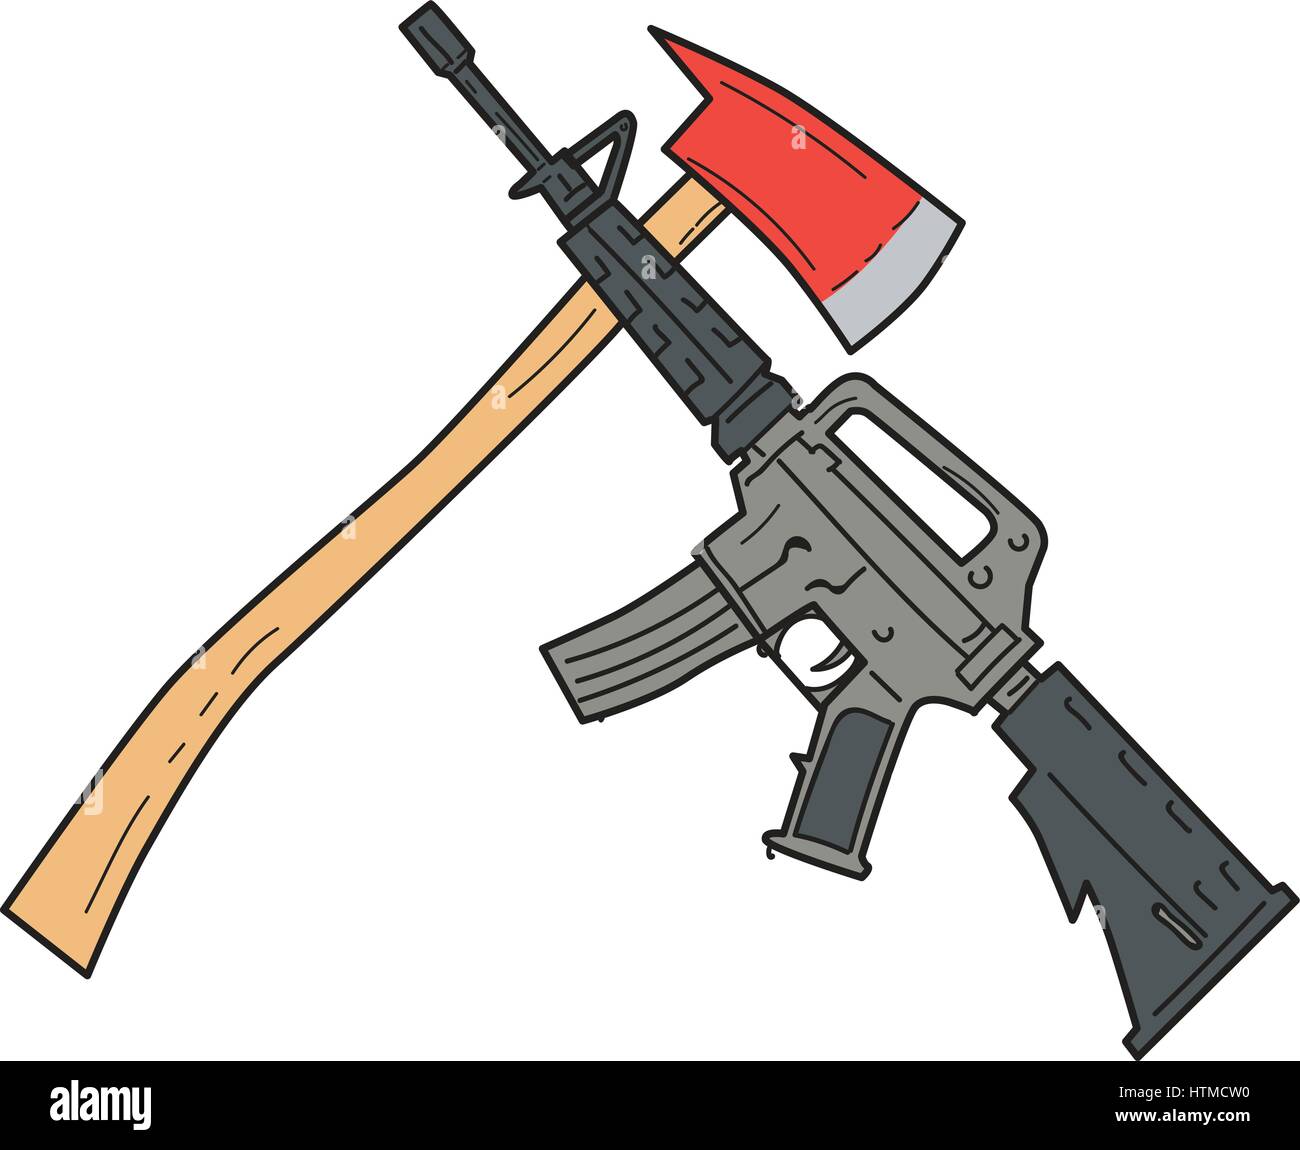 Croquis dessin illustration style à un croisement de hache d'incendie et d'un magazine M4-fed pour carabine fusil utilisé par l'armée américaine et combat de l'US Marine Corps Illustration de Vecteur